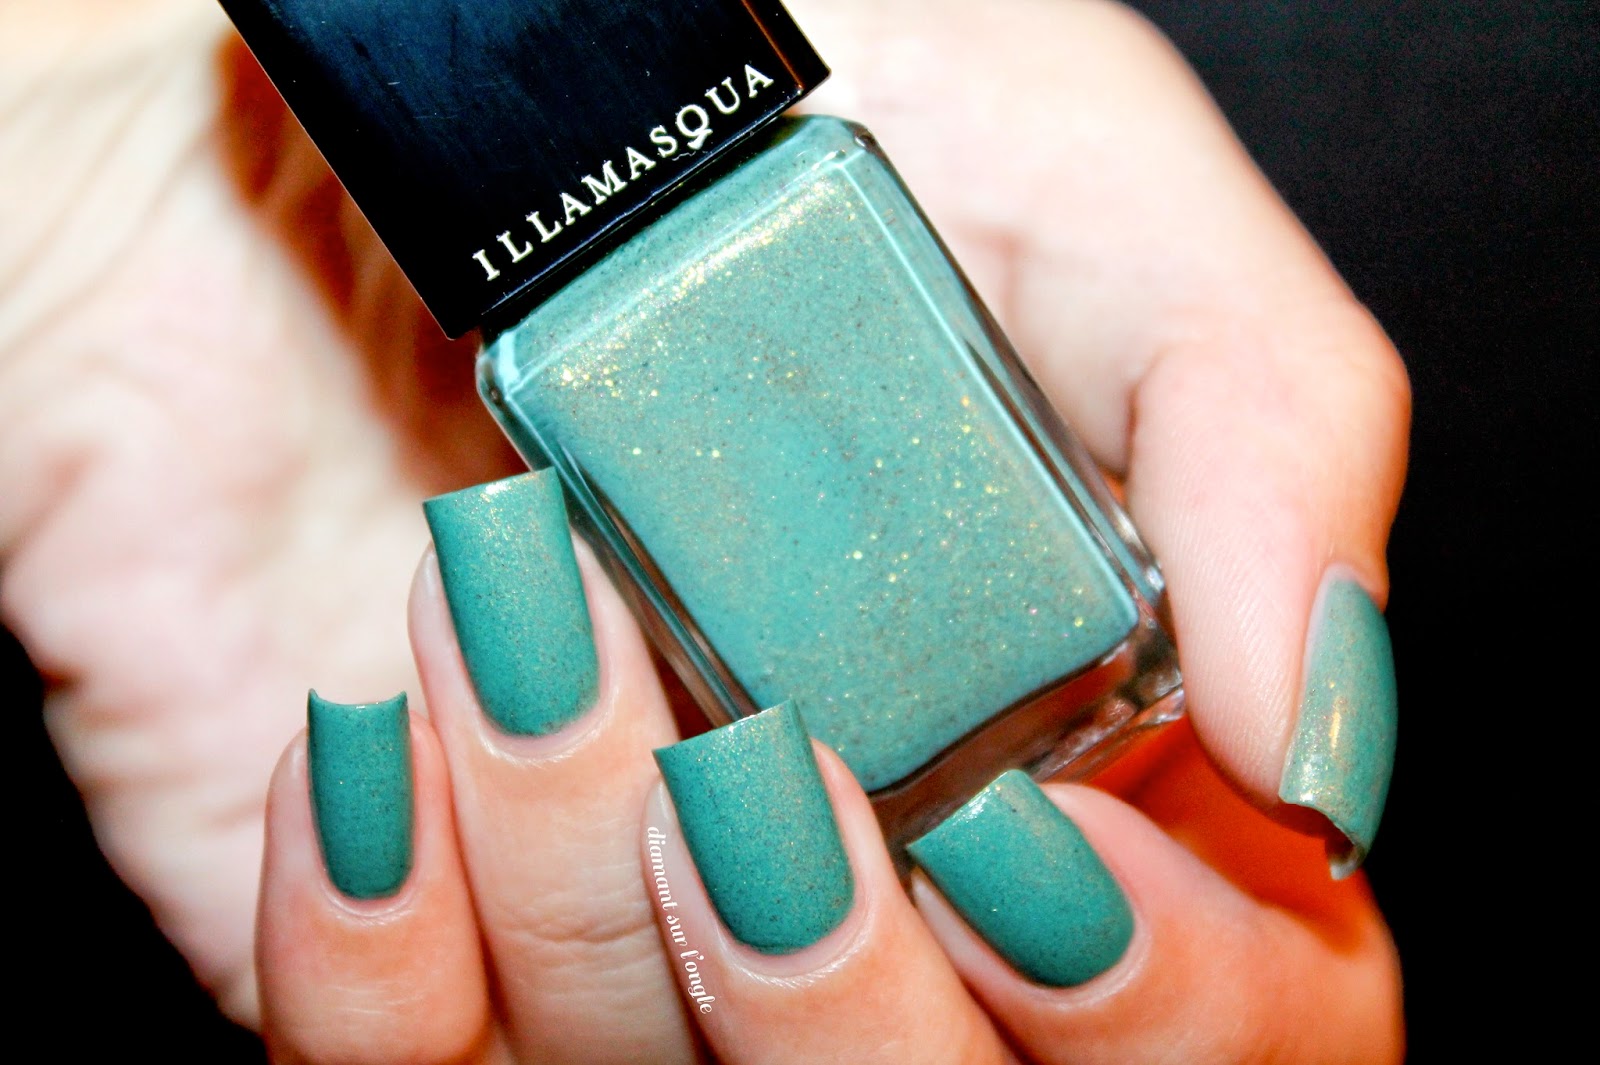 Swatch of the nail polish "Melange" by Illamasqua 